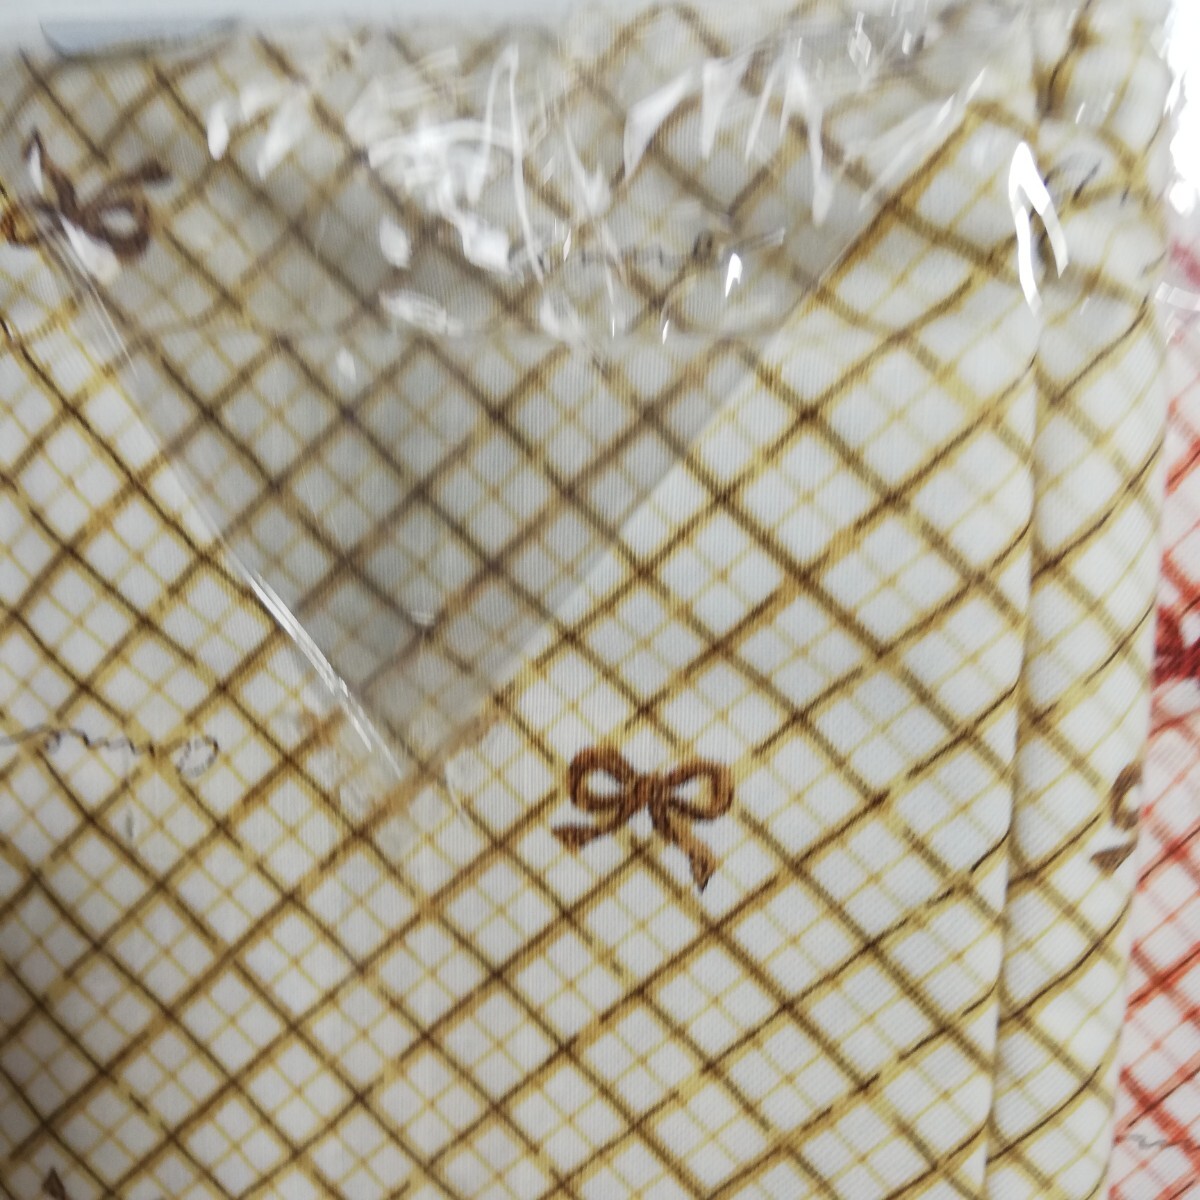 Fabricing リボンクロス柄 ピロケース 枕カバー イエロー・オレンジ 45cm×90cm 2点セット 未使用品 日本製 の画像7